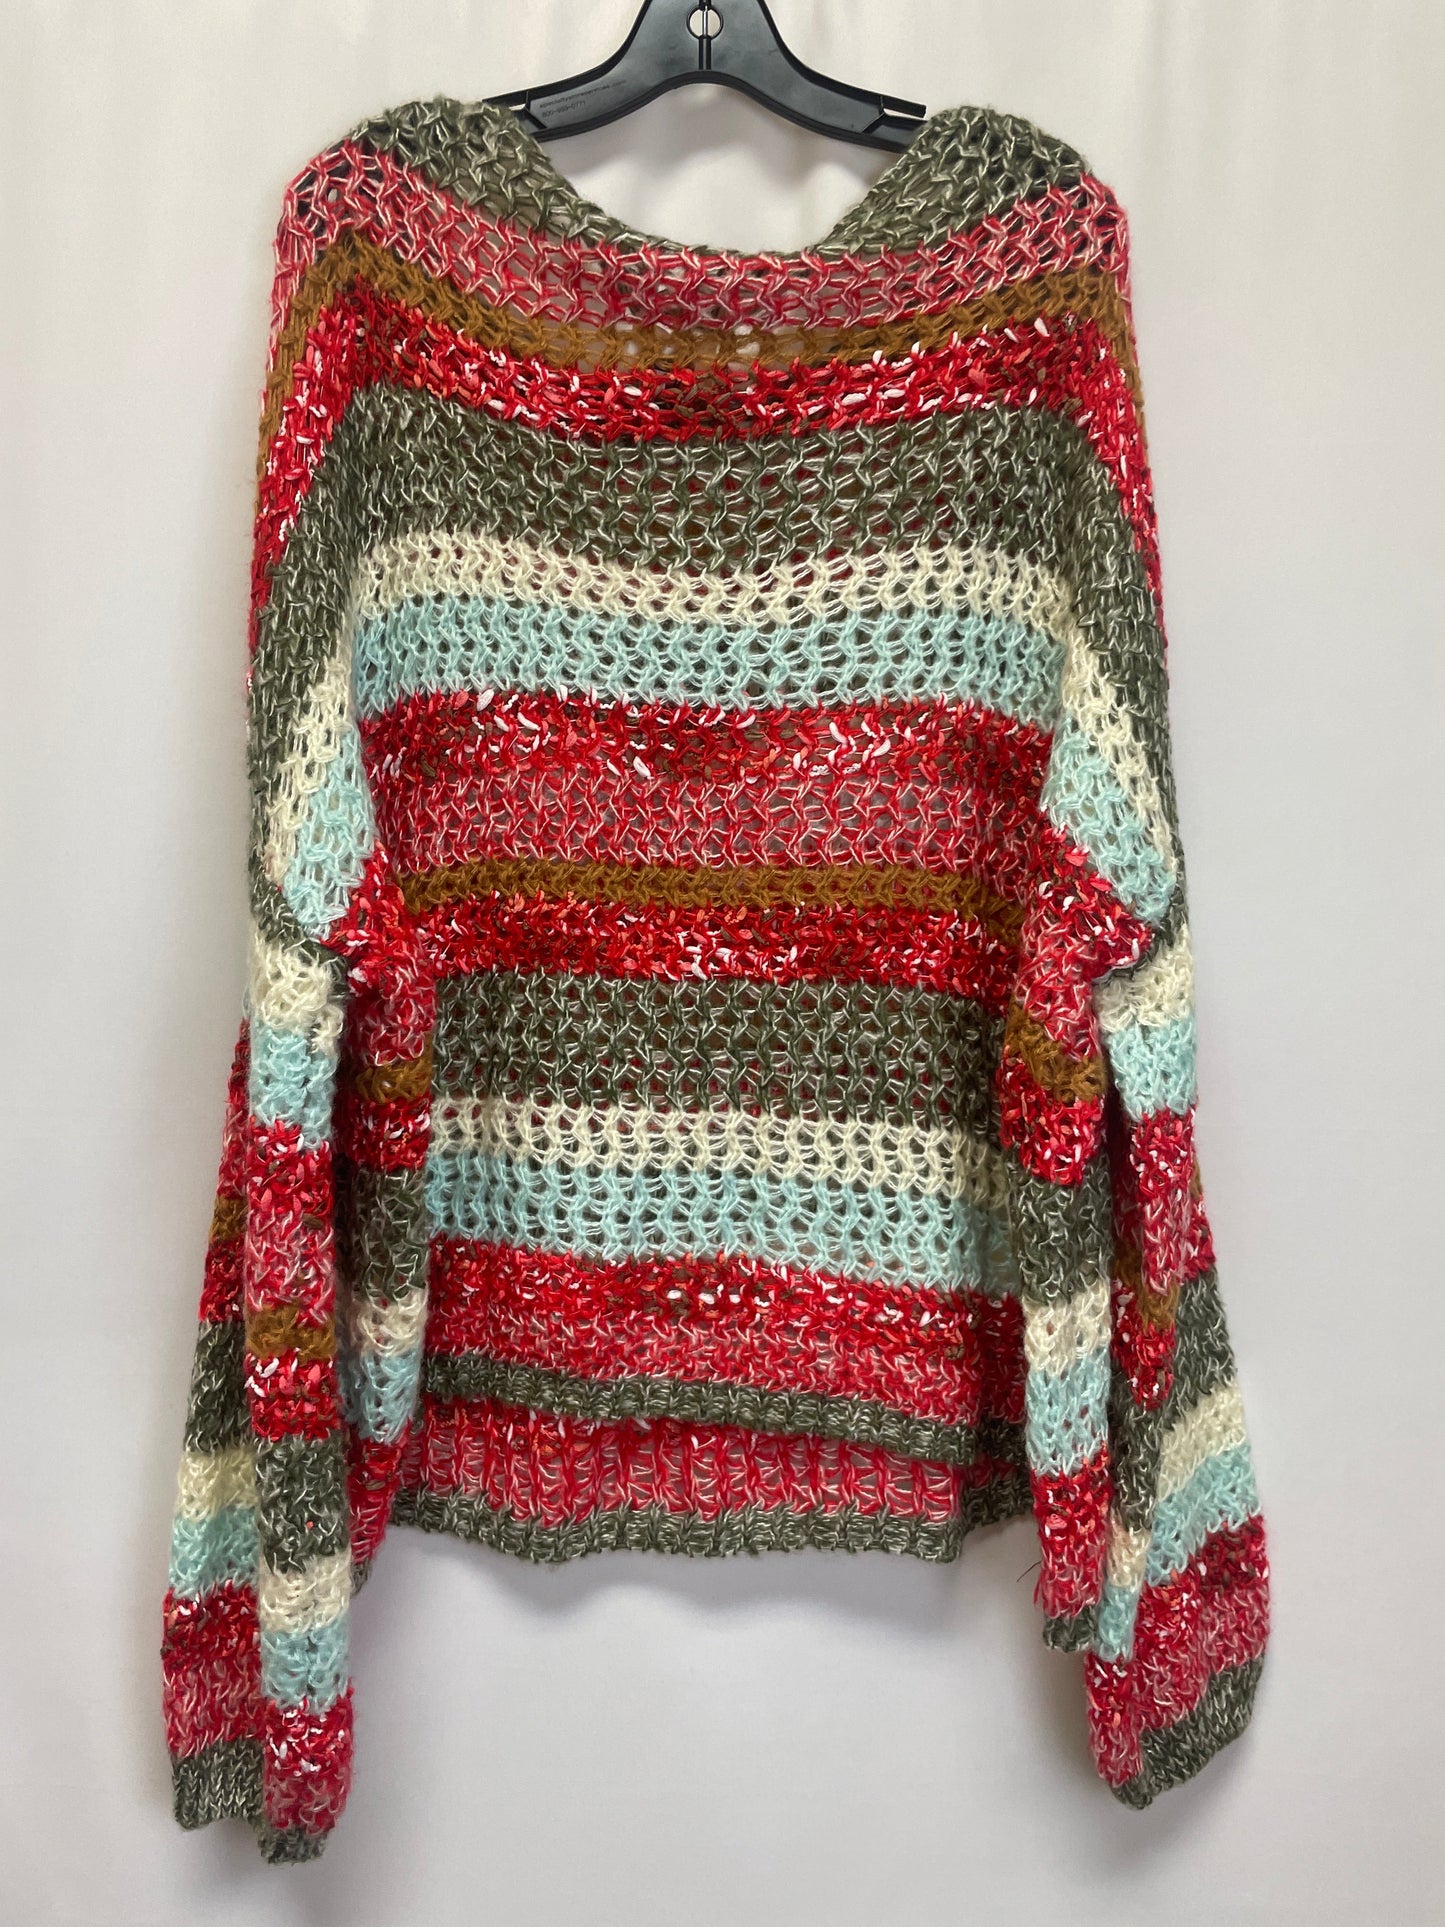 Sweater By Bibi  Size: 2x